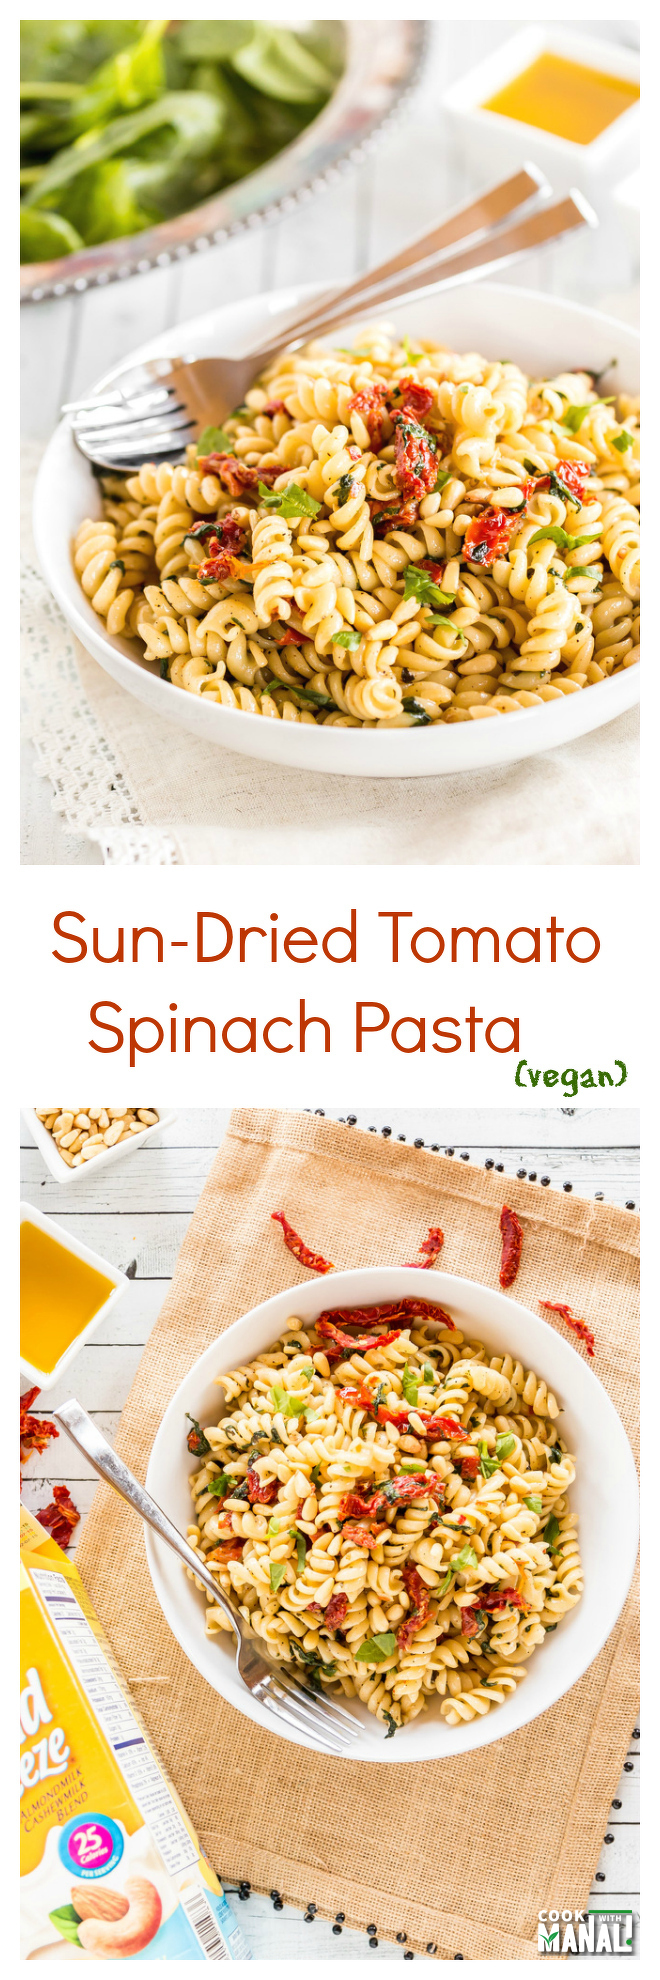 Vegan Sun-Dried Tomato Spinach Pasta Collage